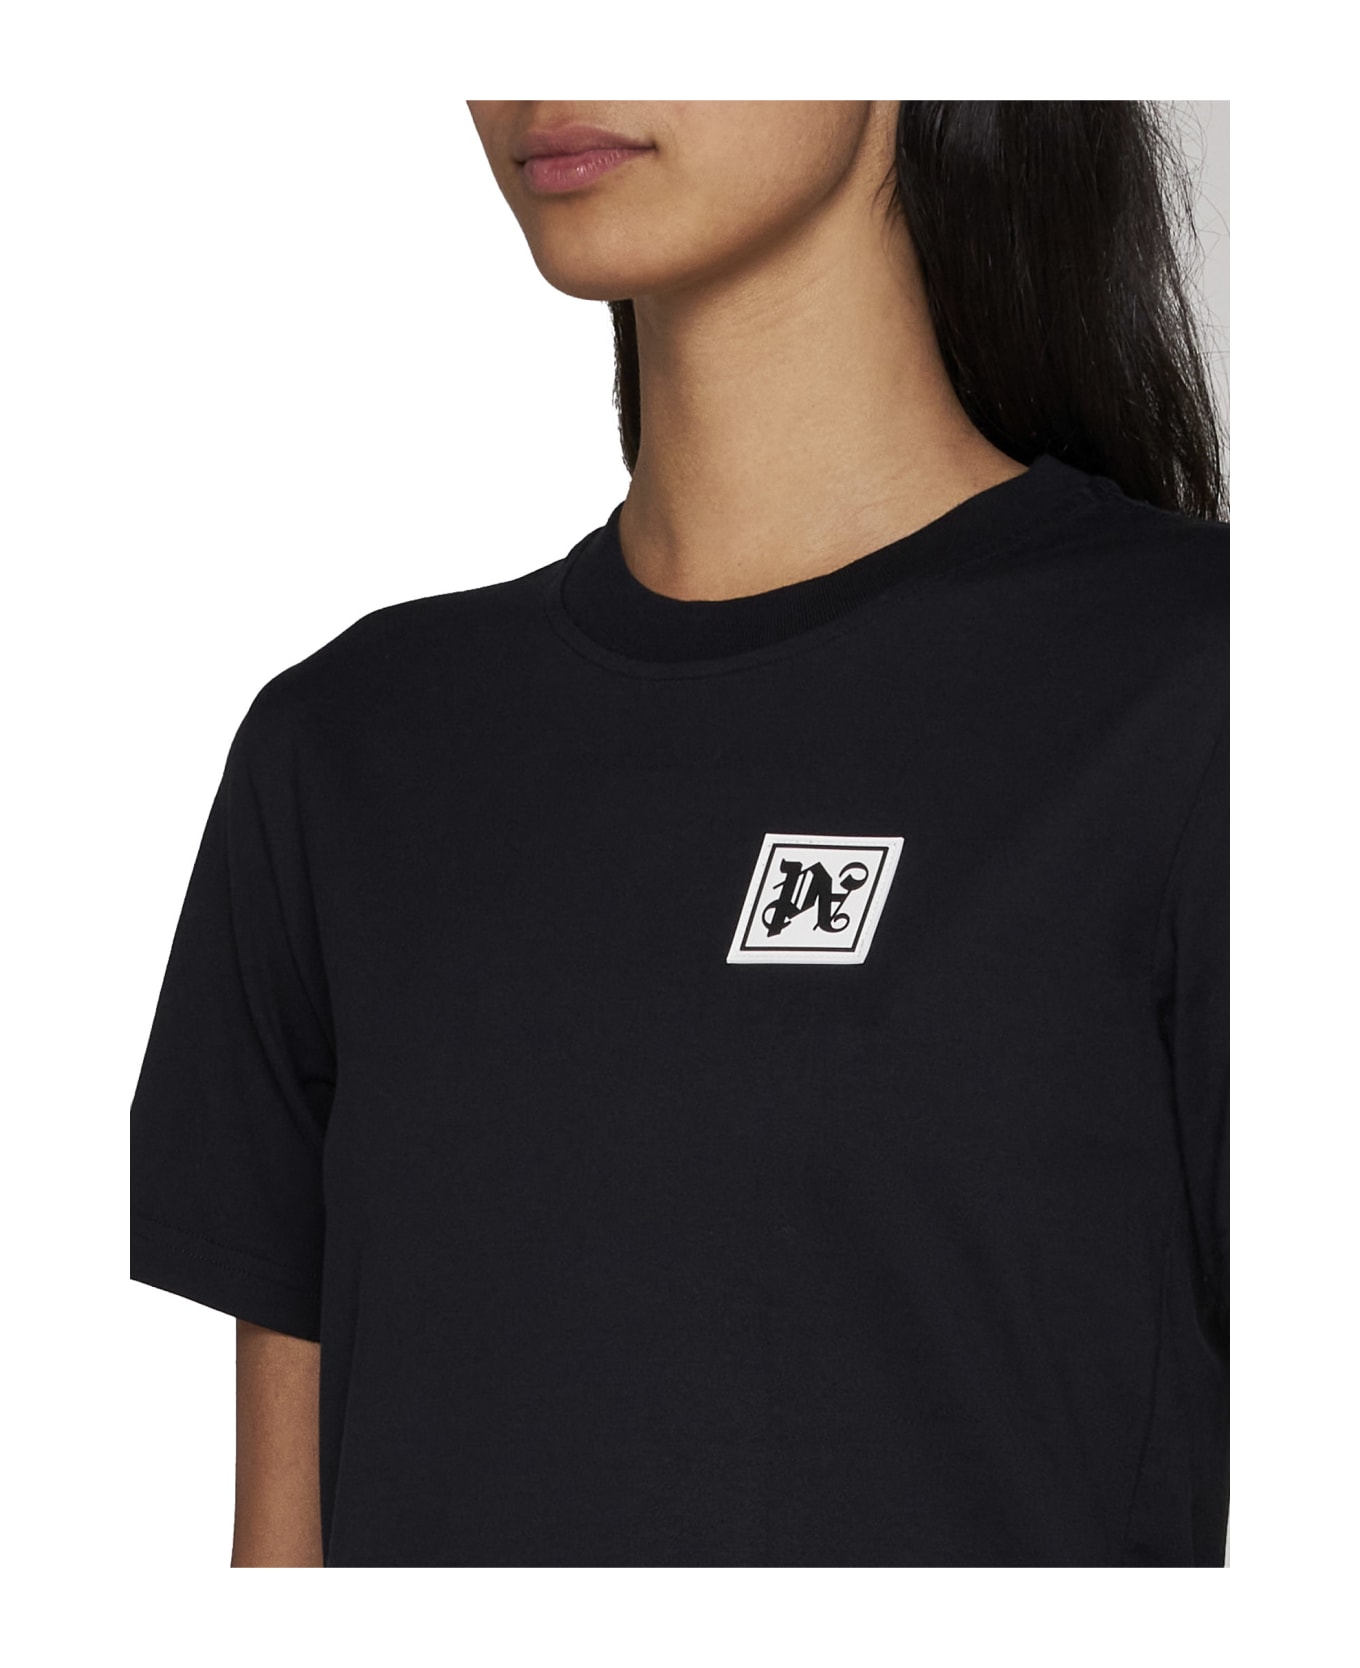 Palm Angels Ski Club T-shirt - BLACK WHITE (Black) Tシャツ